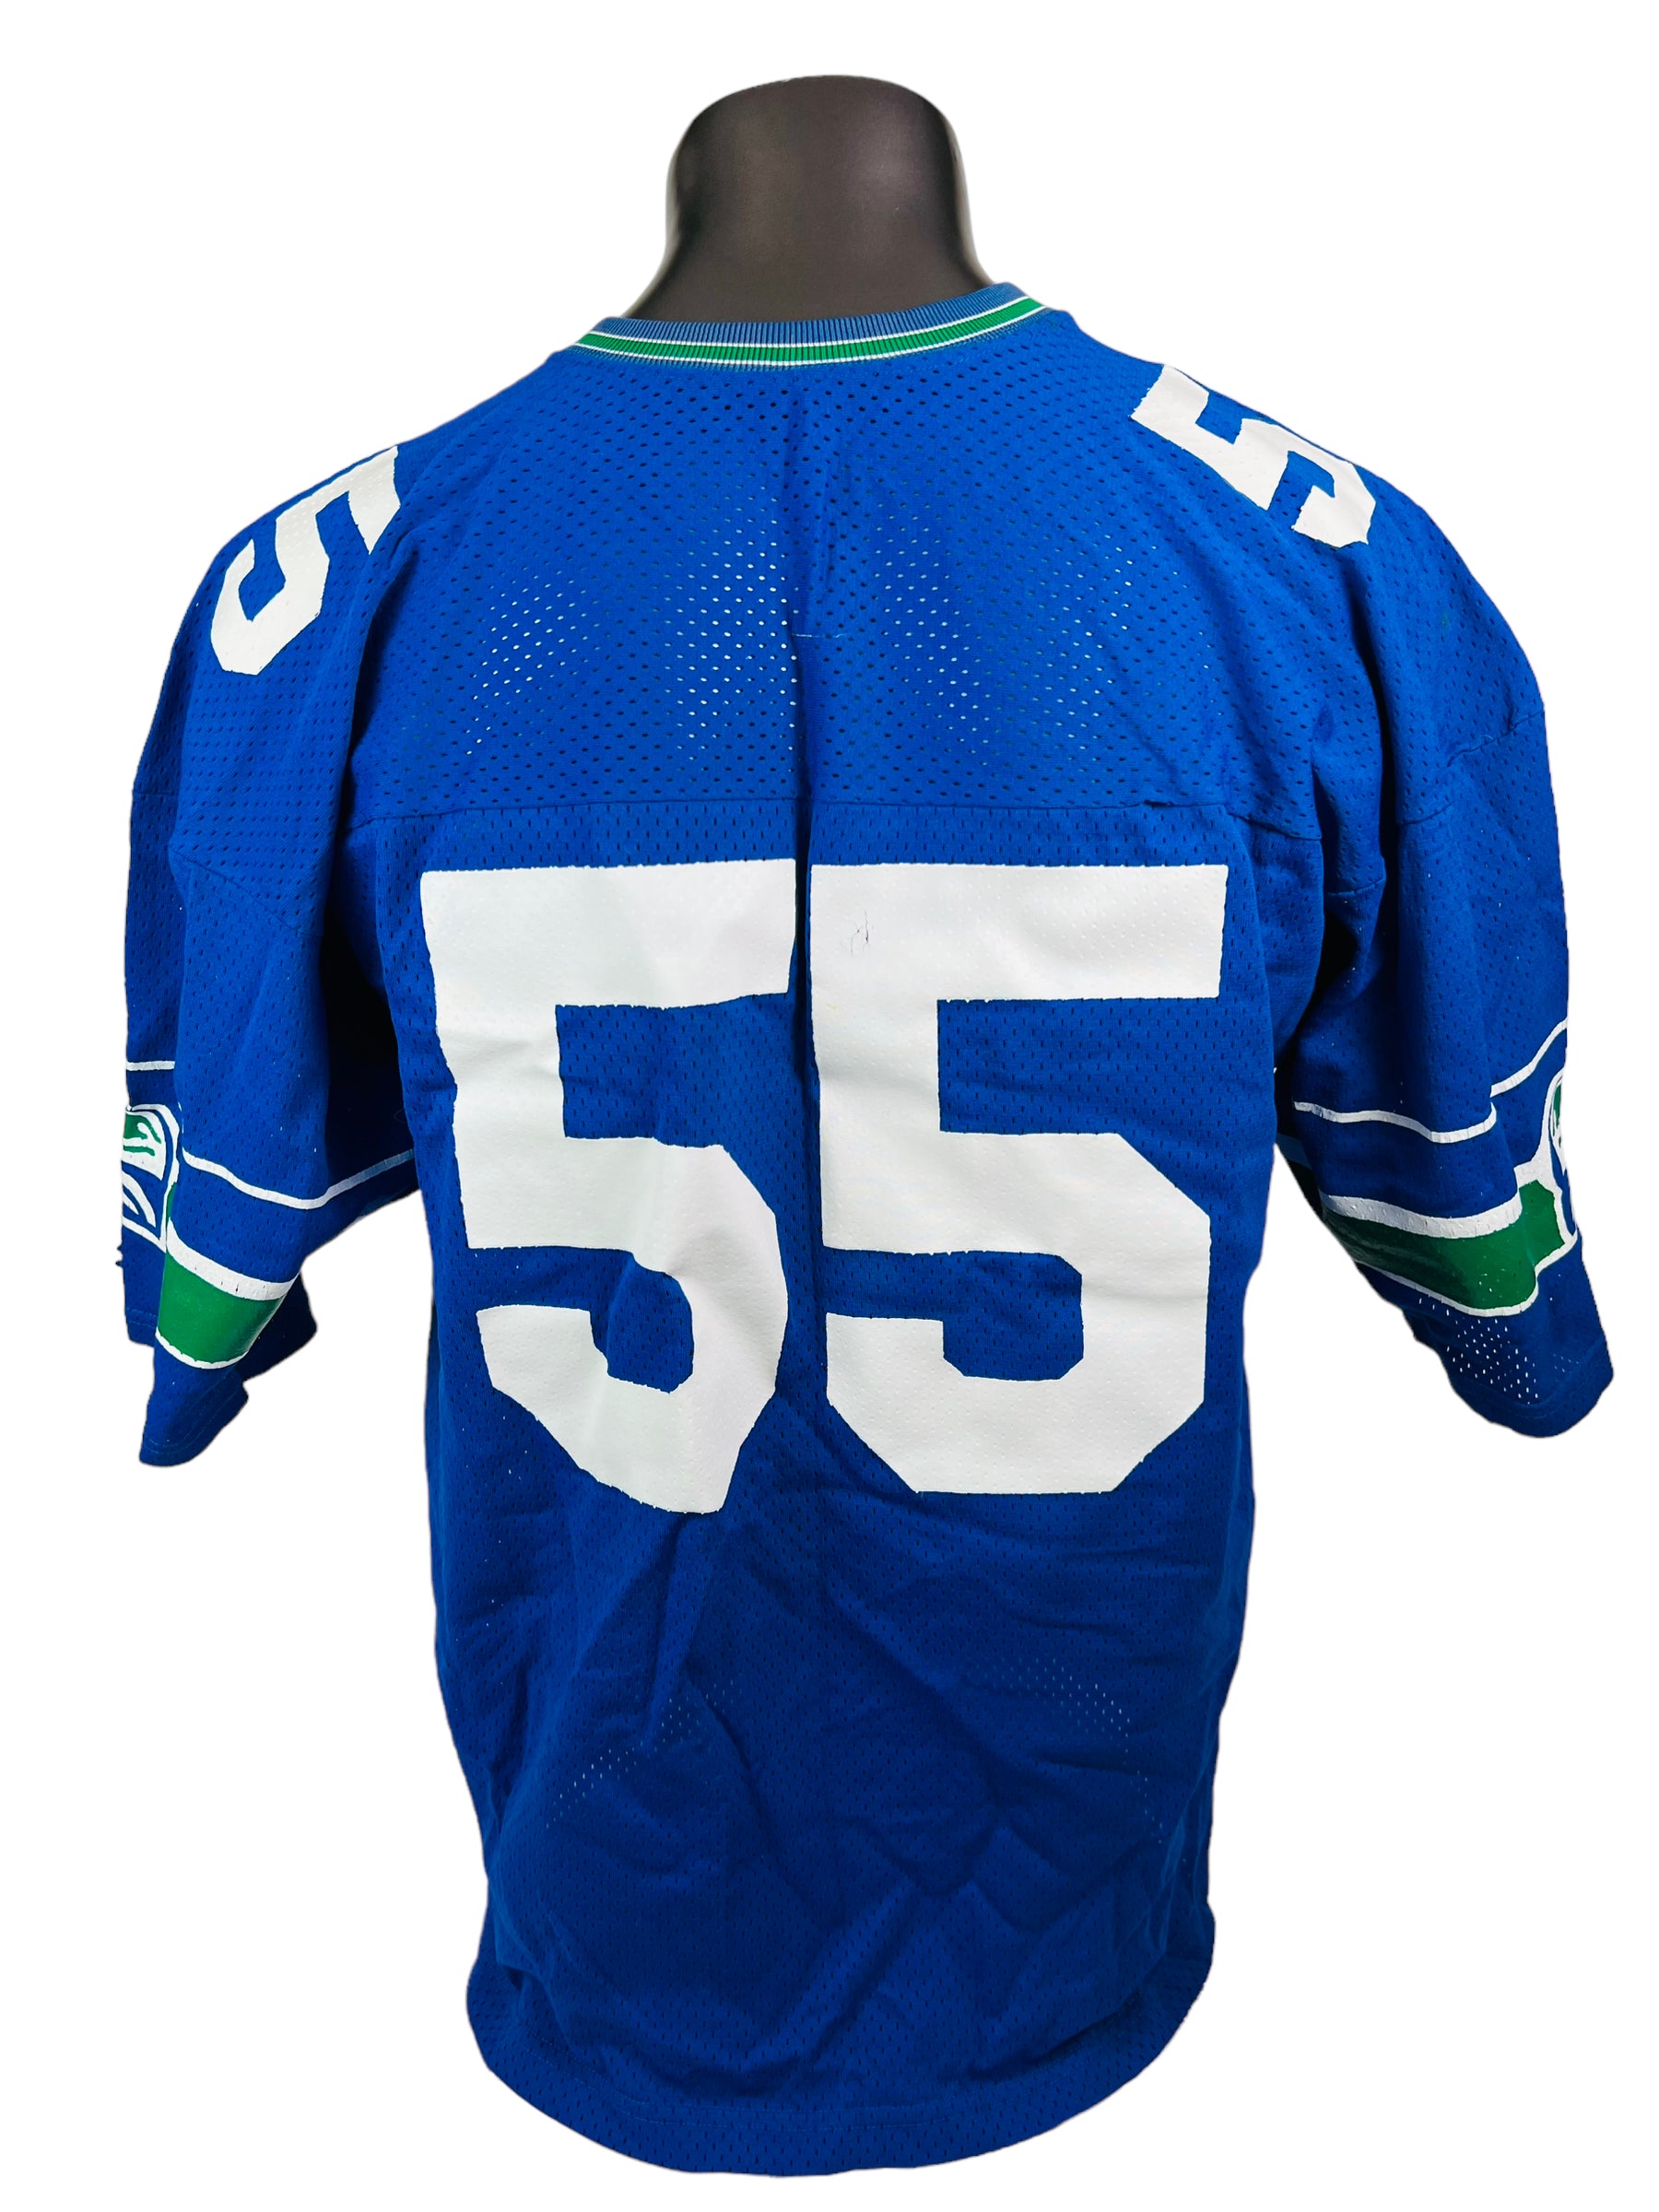 1980 seahawks jersey